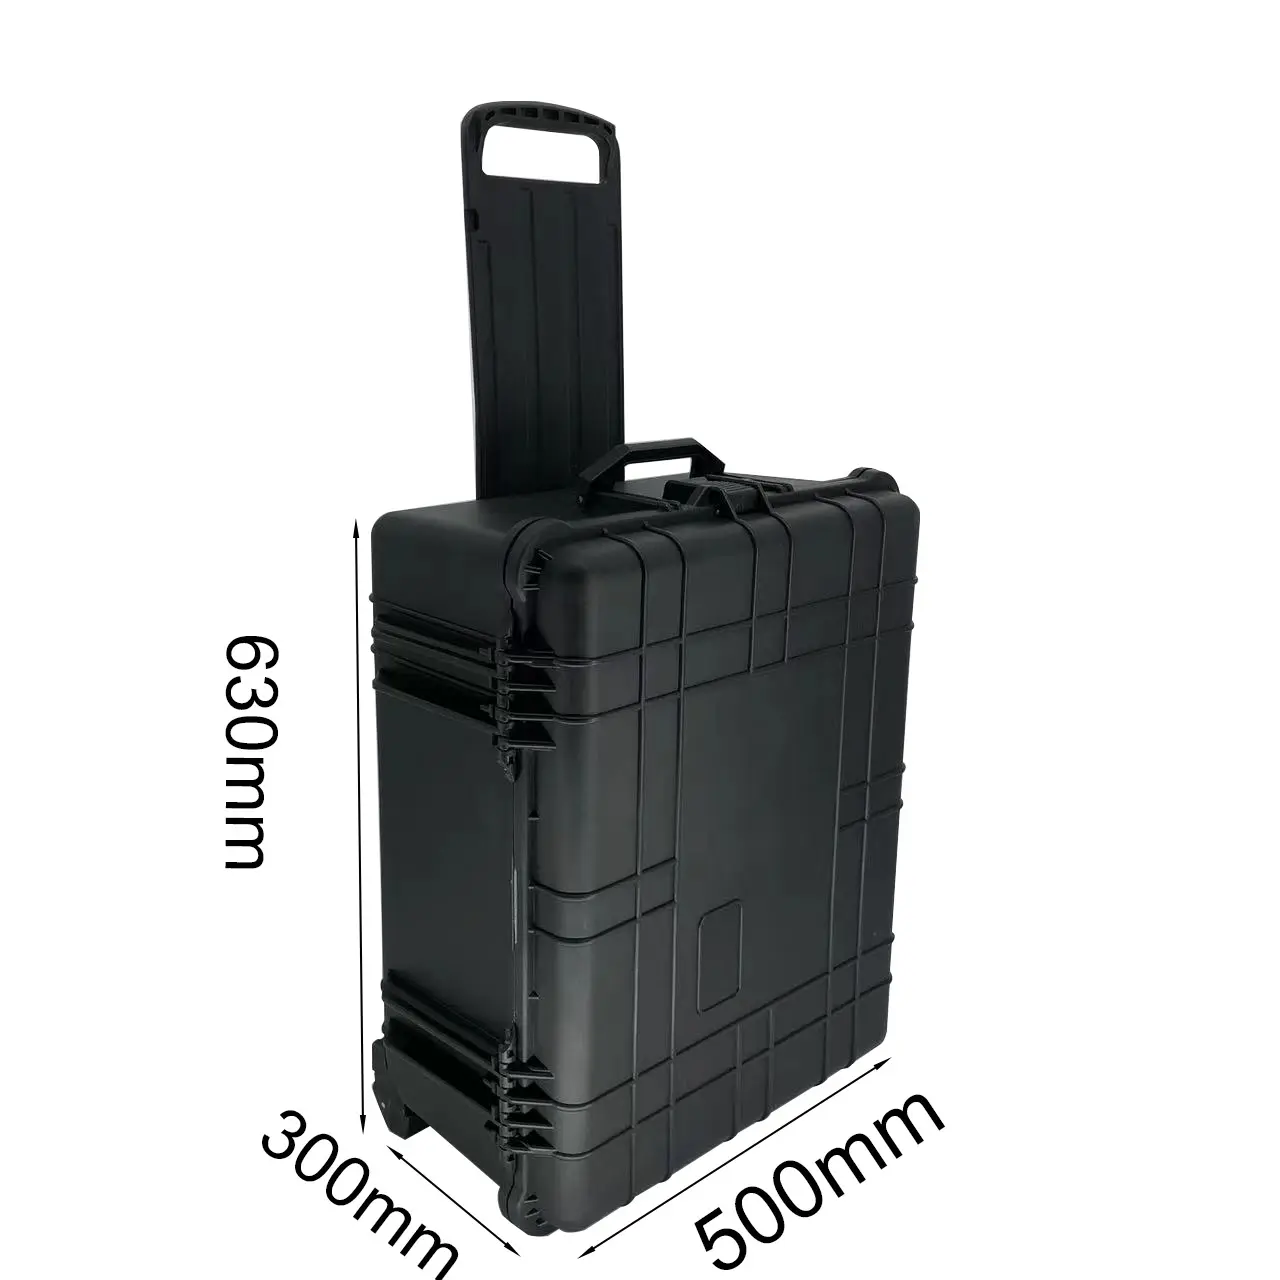 Dpc127 mala de viagem à prova d' água, material de proteção, mais durável, para malas, carrinho, com rodas